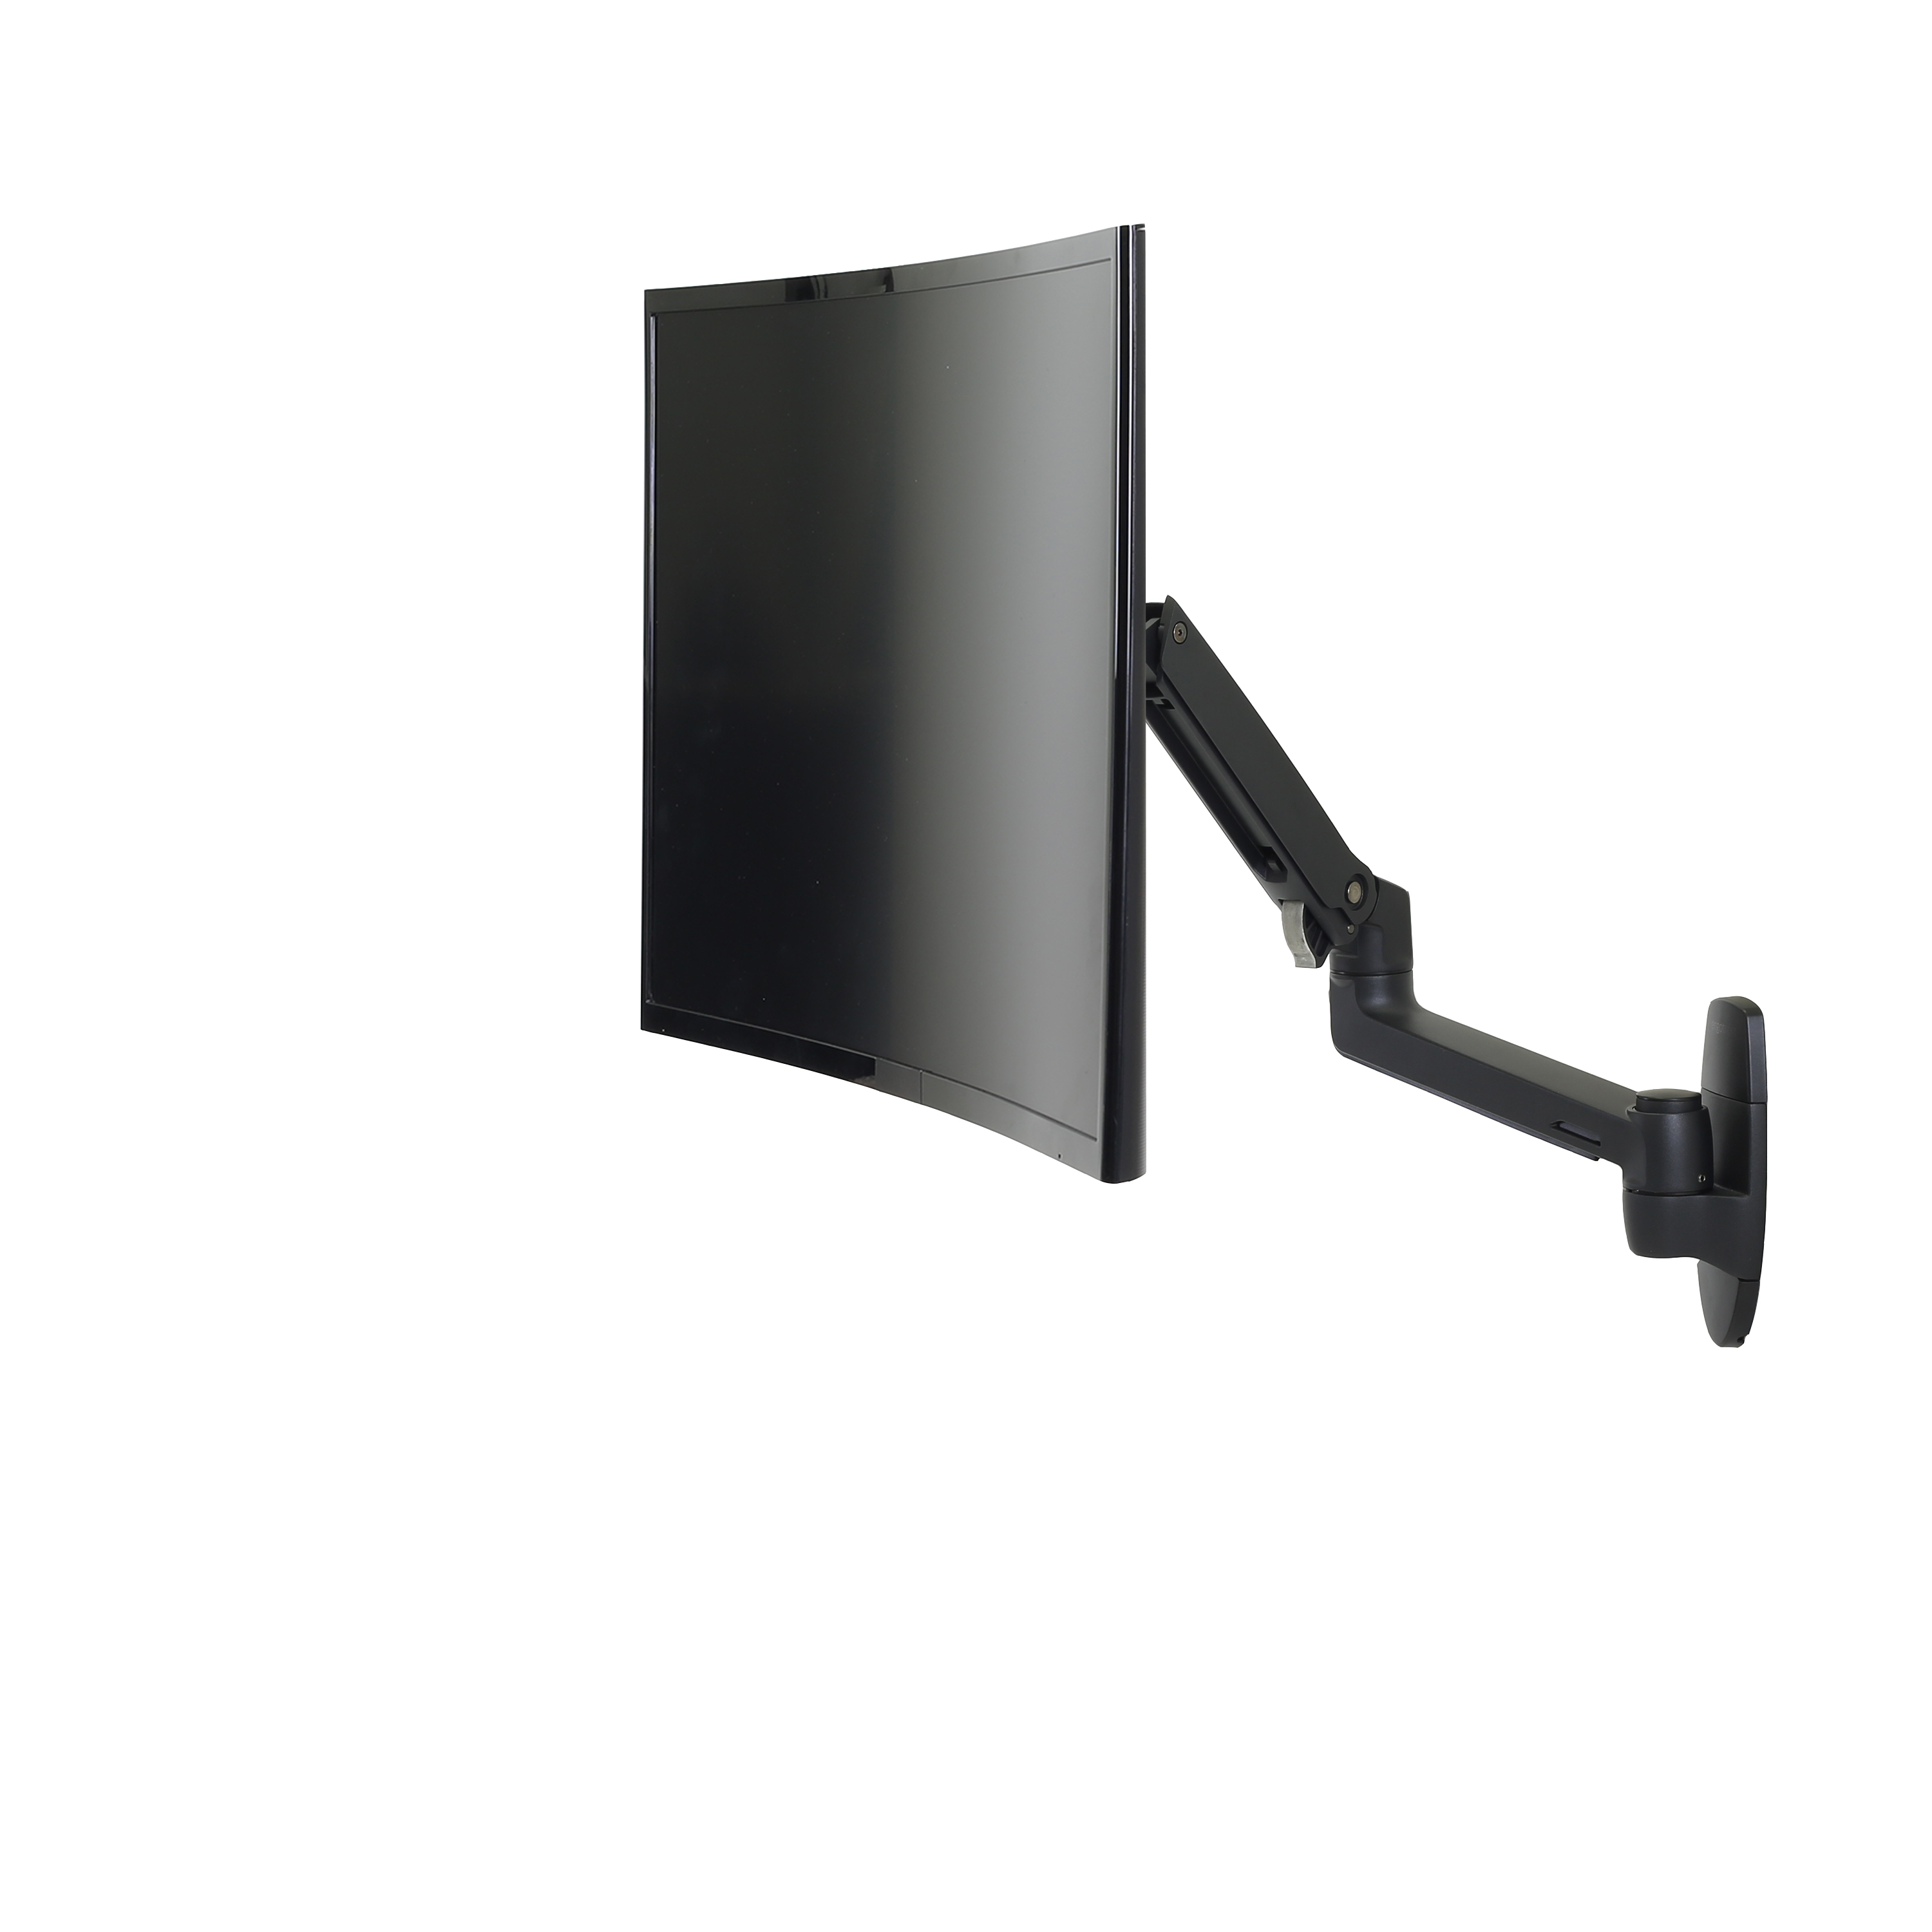 Ergotron LX - Befestigungskit (Gelenkarm, Erweiterungsadapter, Wandhalterung) - für LCD-Display - mattschwarz - Bildschirmgröße: bis zu 86,4 cm (bis zu 34 Zoll)